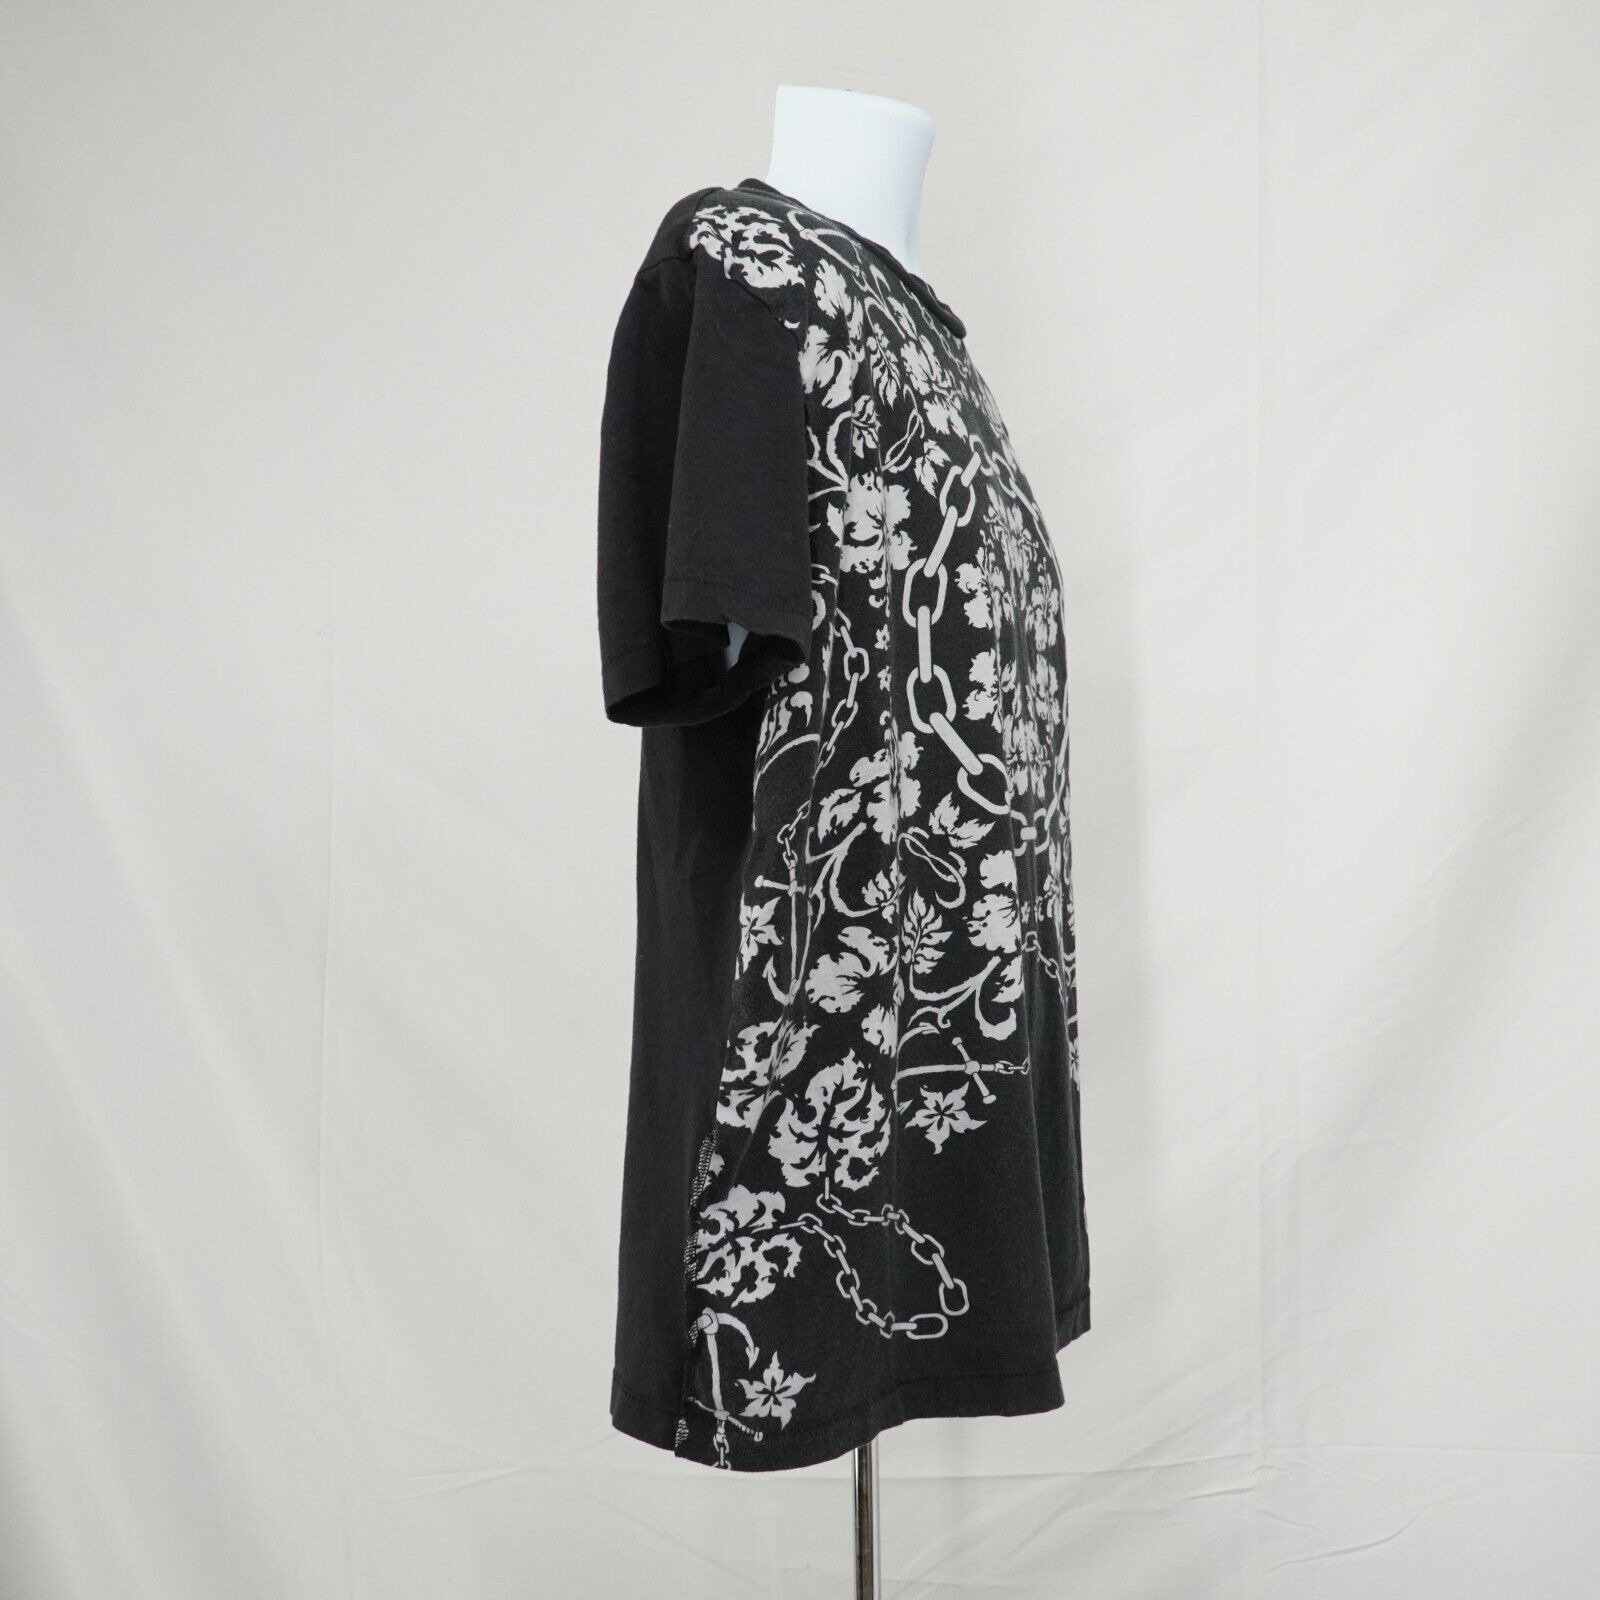 Black White Printed Shirt Floral Chains Anchor Hawaiian Tee - 13